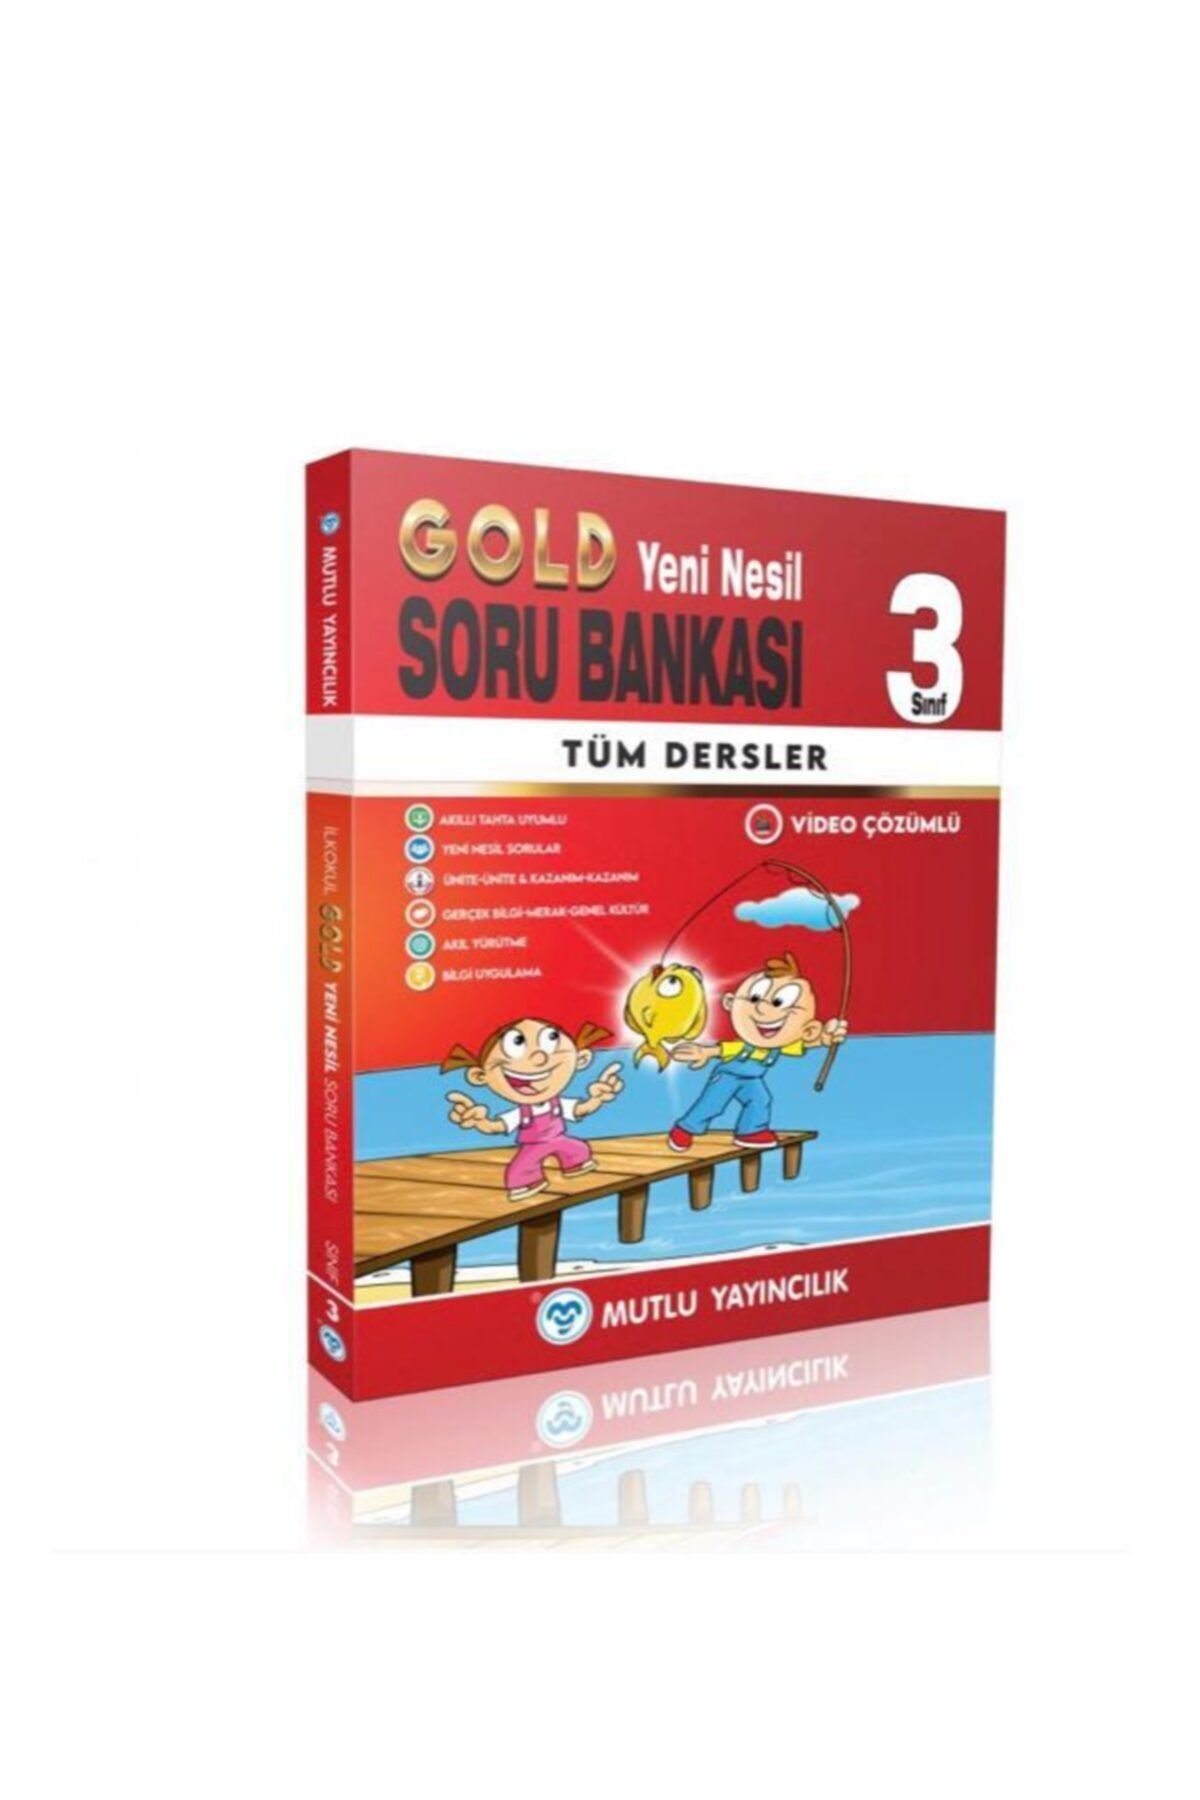 Mutlu Yayıncılık Mutlu Yayınları 3. Sınıf Tüm Dersler Gold Yeni Nesil Soru Bankası (yeni Basım)